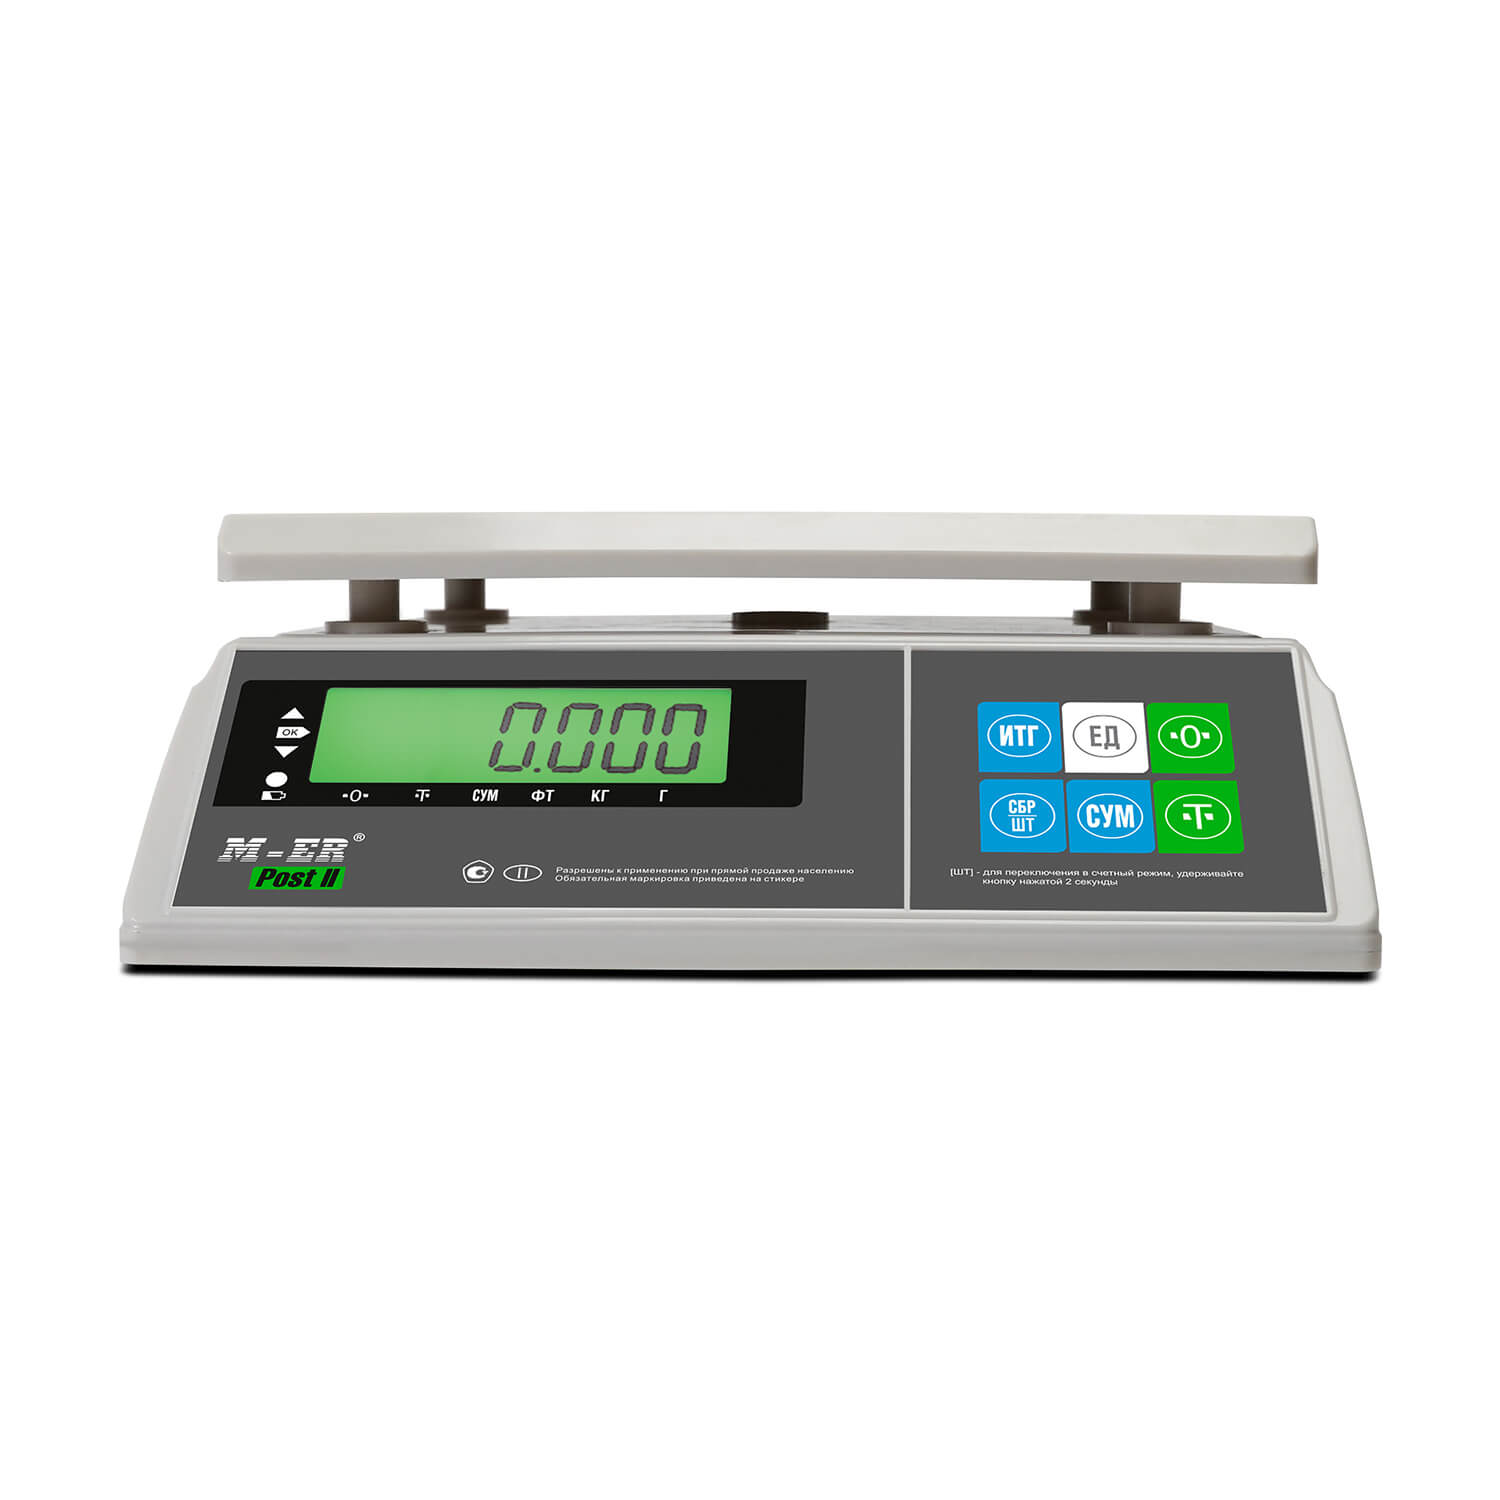 Порционные весы M-ER 326 AFU-32.1 "Post II" LCD MERTECH 3061 Весы #7